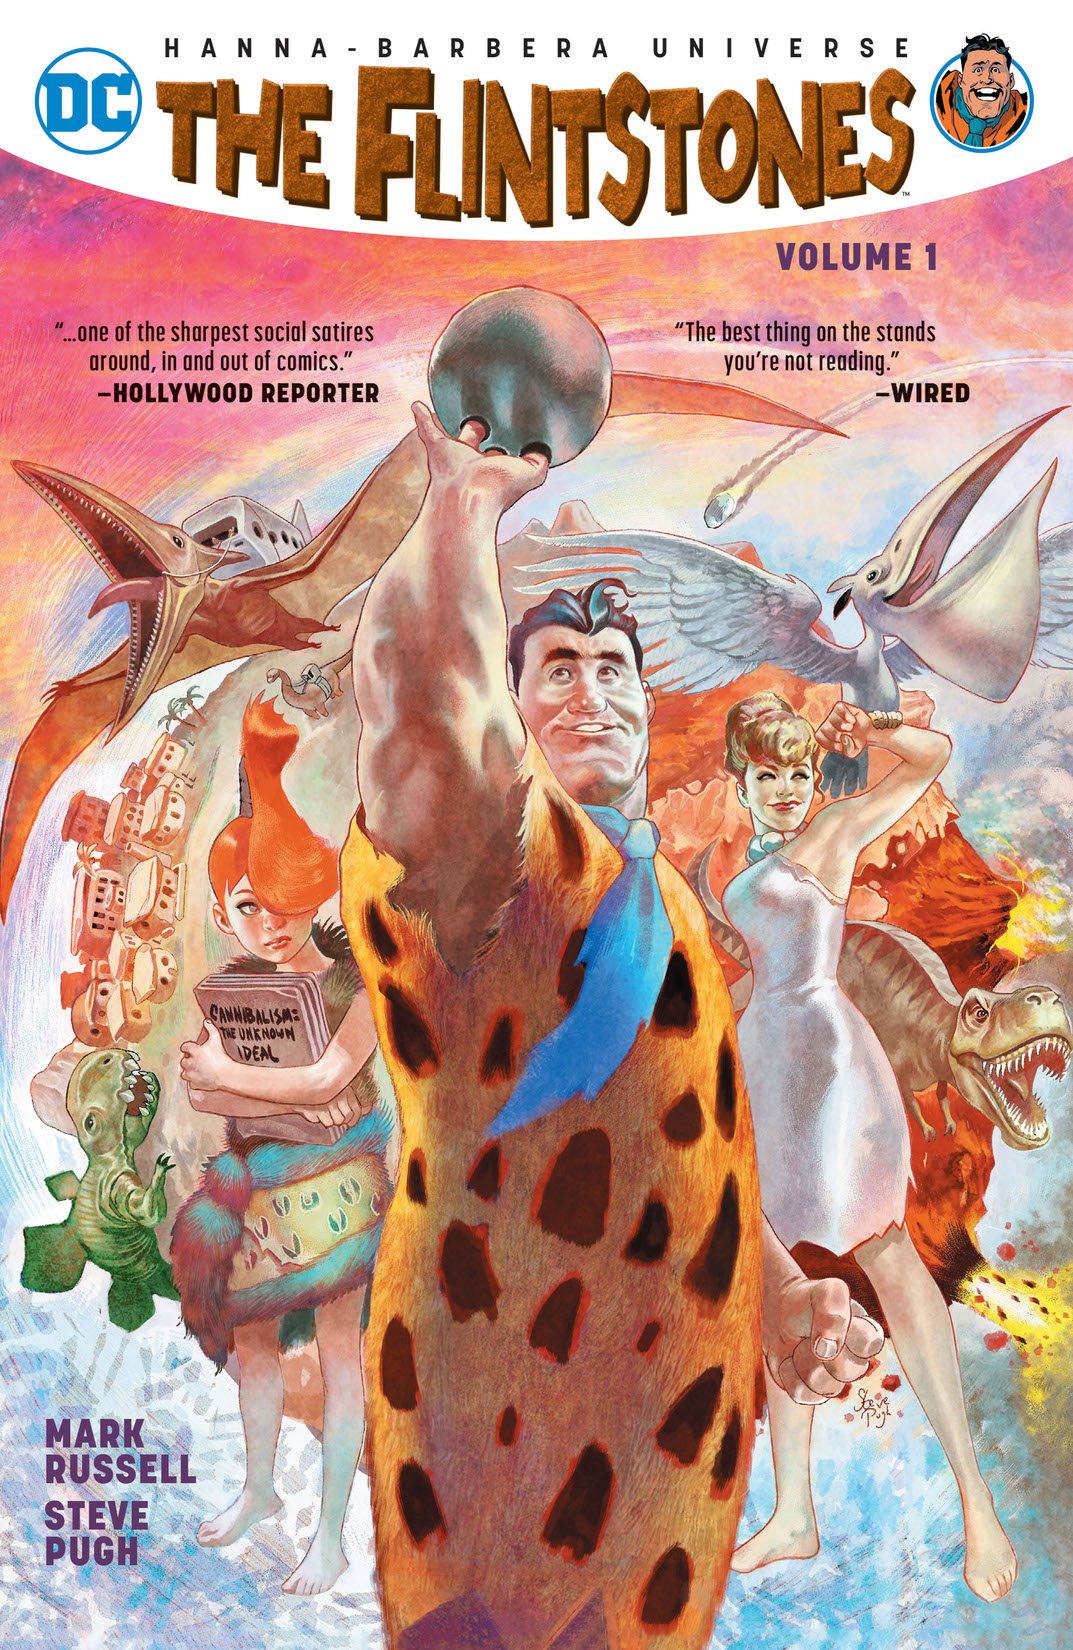 The Flintstones Vol. 1 preview images